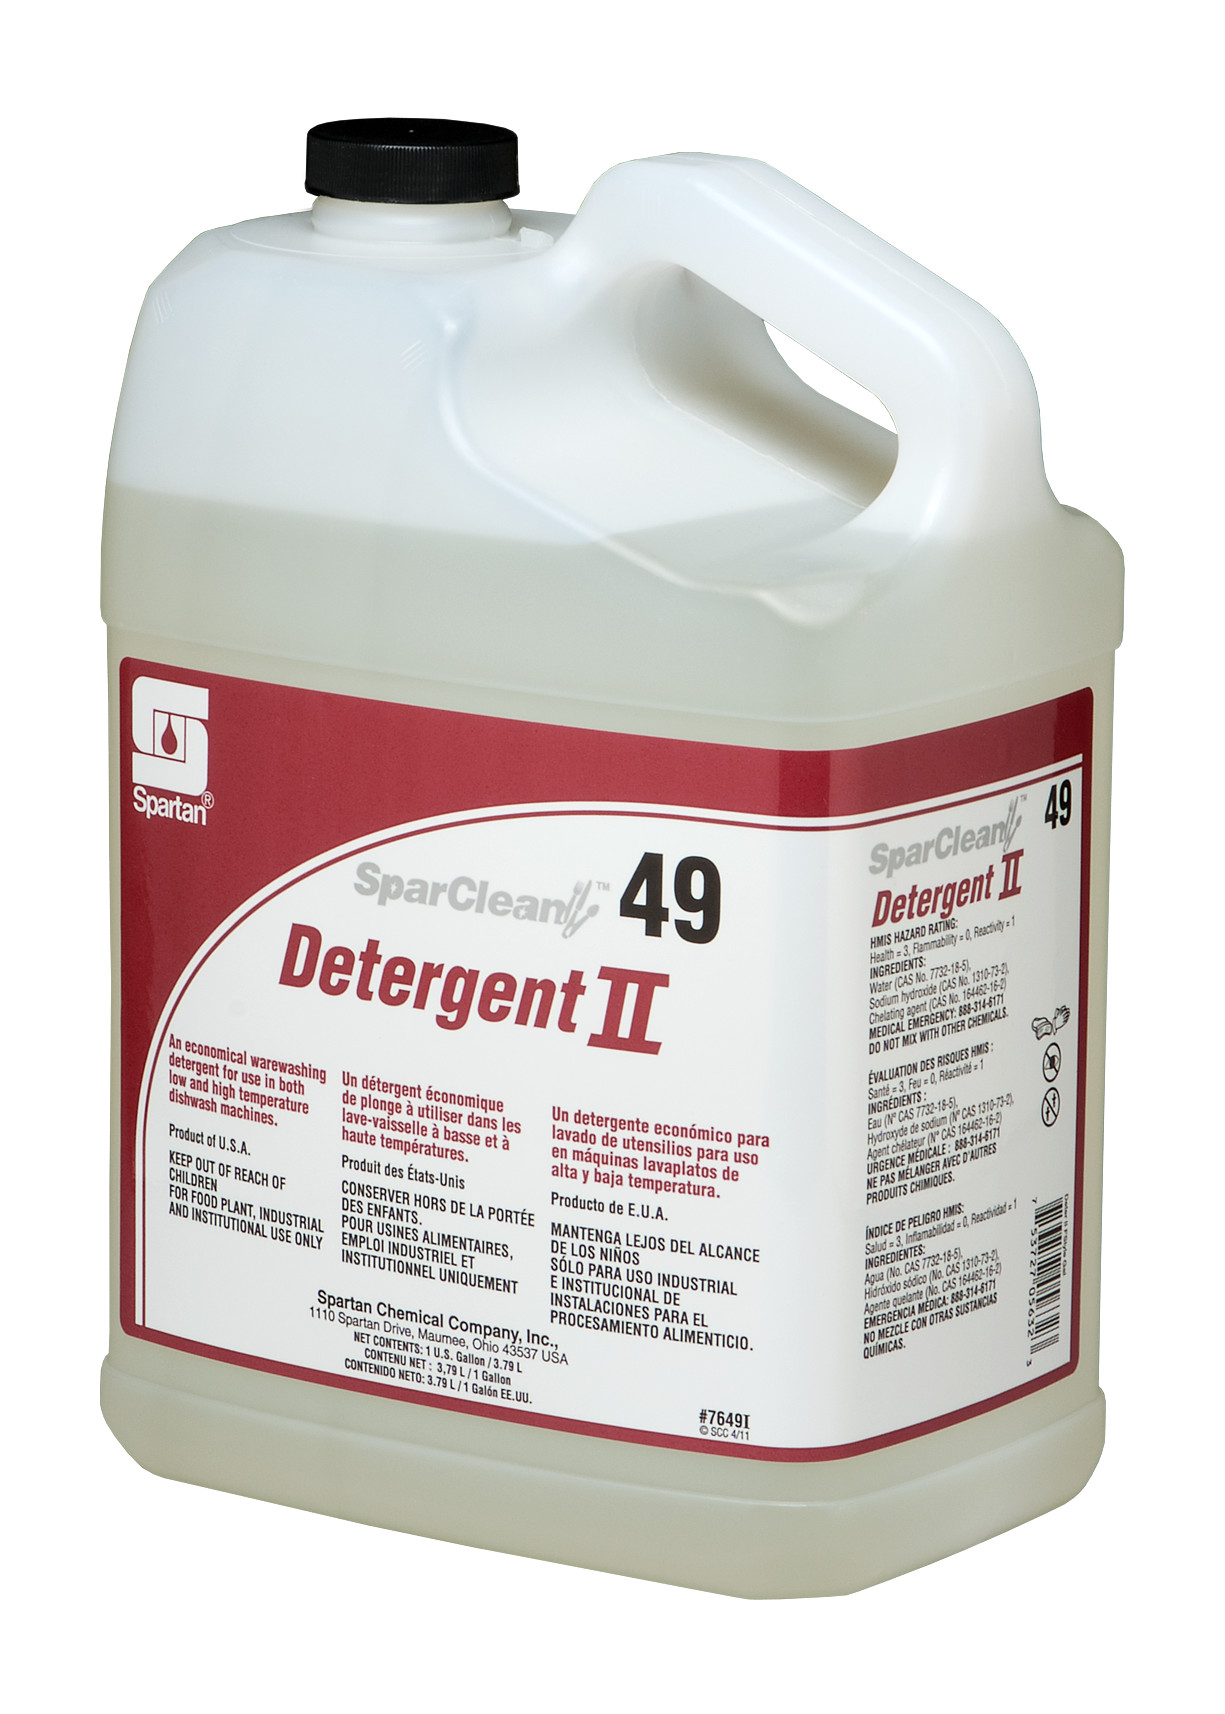 Detergent+II+w%2FInsert+%7B1+gallon+%284+per+case%29%7D+SparClean